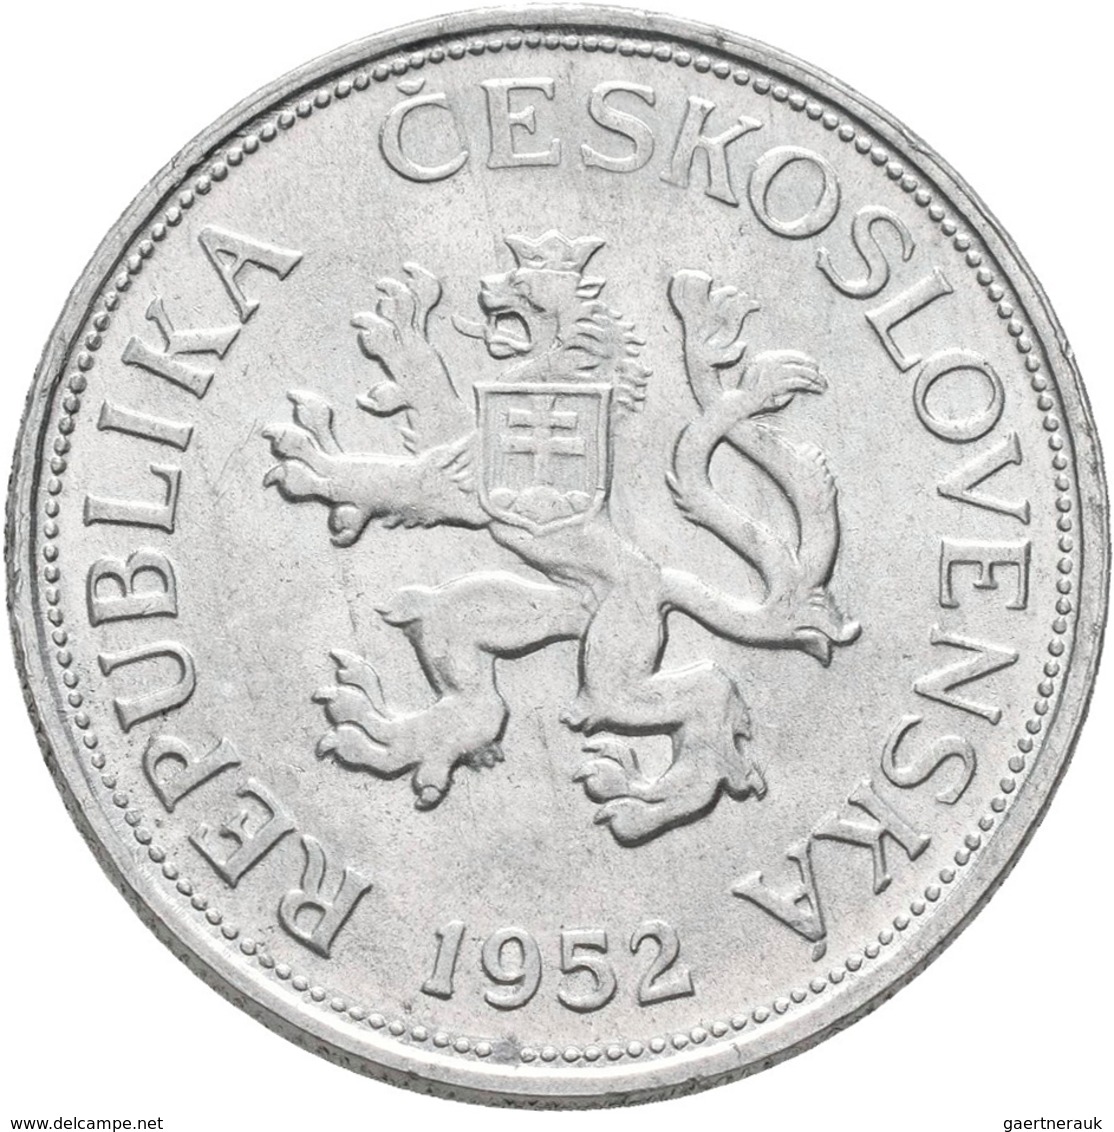 Tschechoslowakei: 5 Kcs 1952 RR !, Nicht Ausgegeben, KM# 34, Novotny 42a, Aluminium, Vorzüglich. - Checoslovaquia